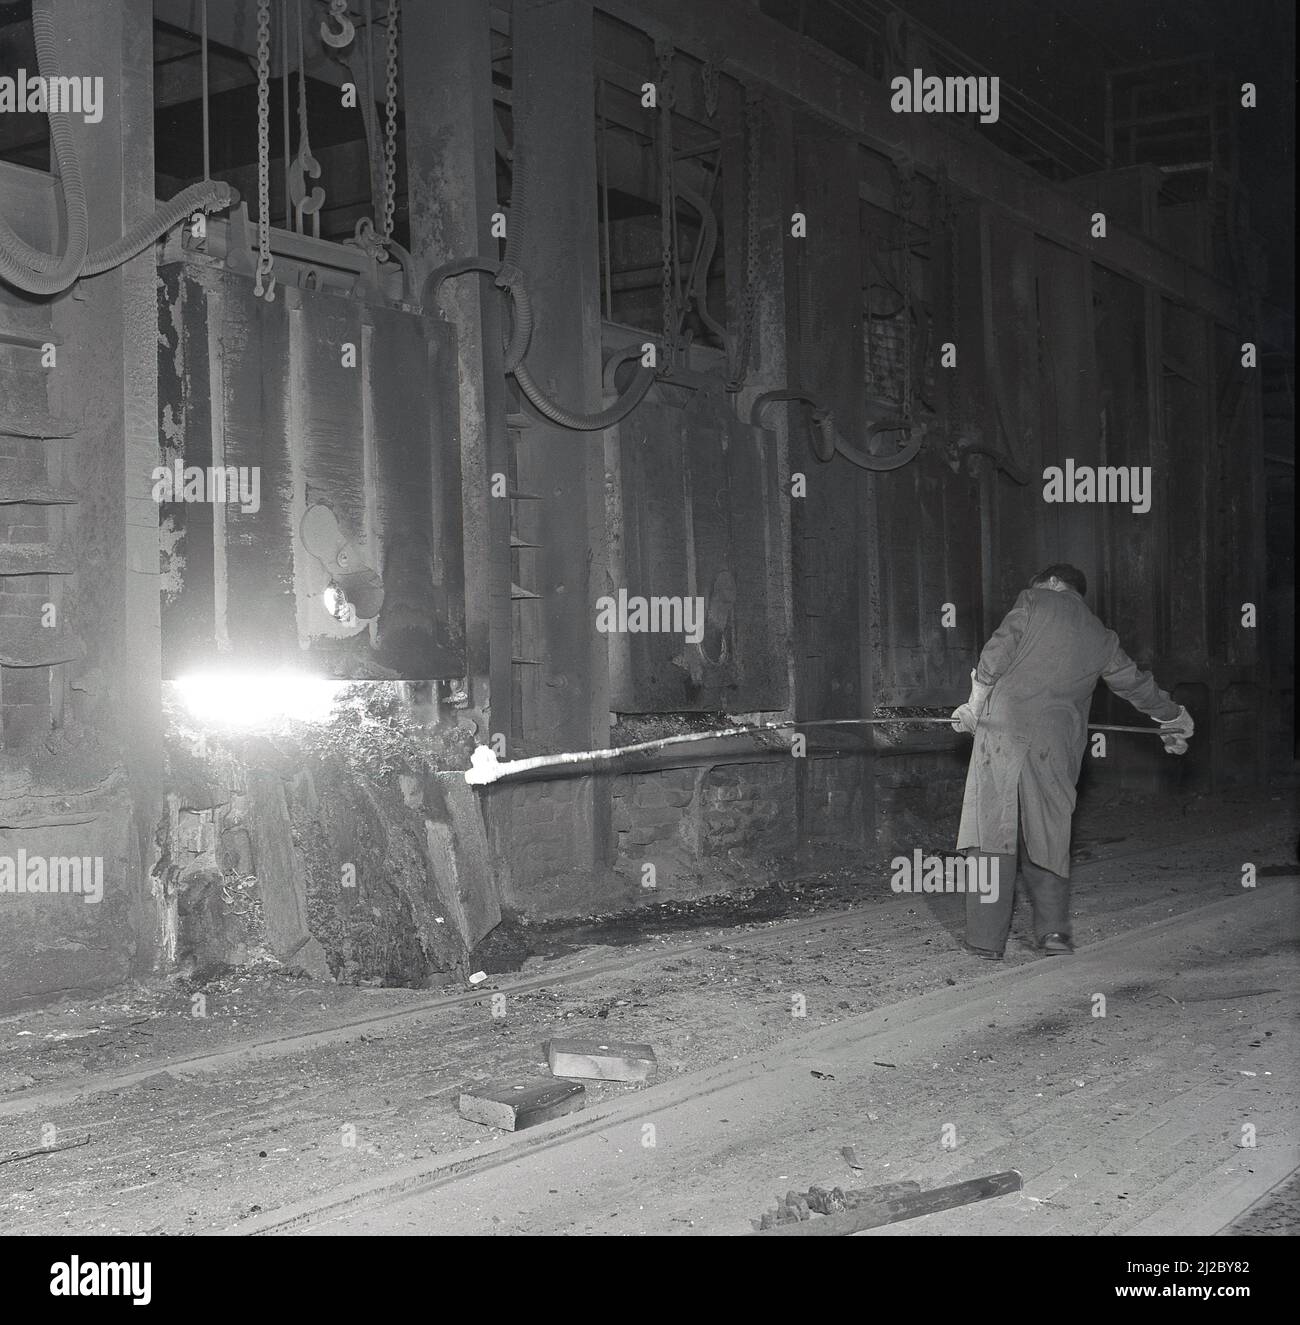 1955, historique, un ouvrier de l'acier avec un long poteau lourd dans un four à foyer ouvert à l'usine d'acier d'Abbey Works, Port Talbot, pays de Galles, Royaume-Uni, maison de la compagnie de l'acier du pays de Galles. Banque D'Images